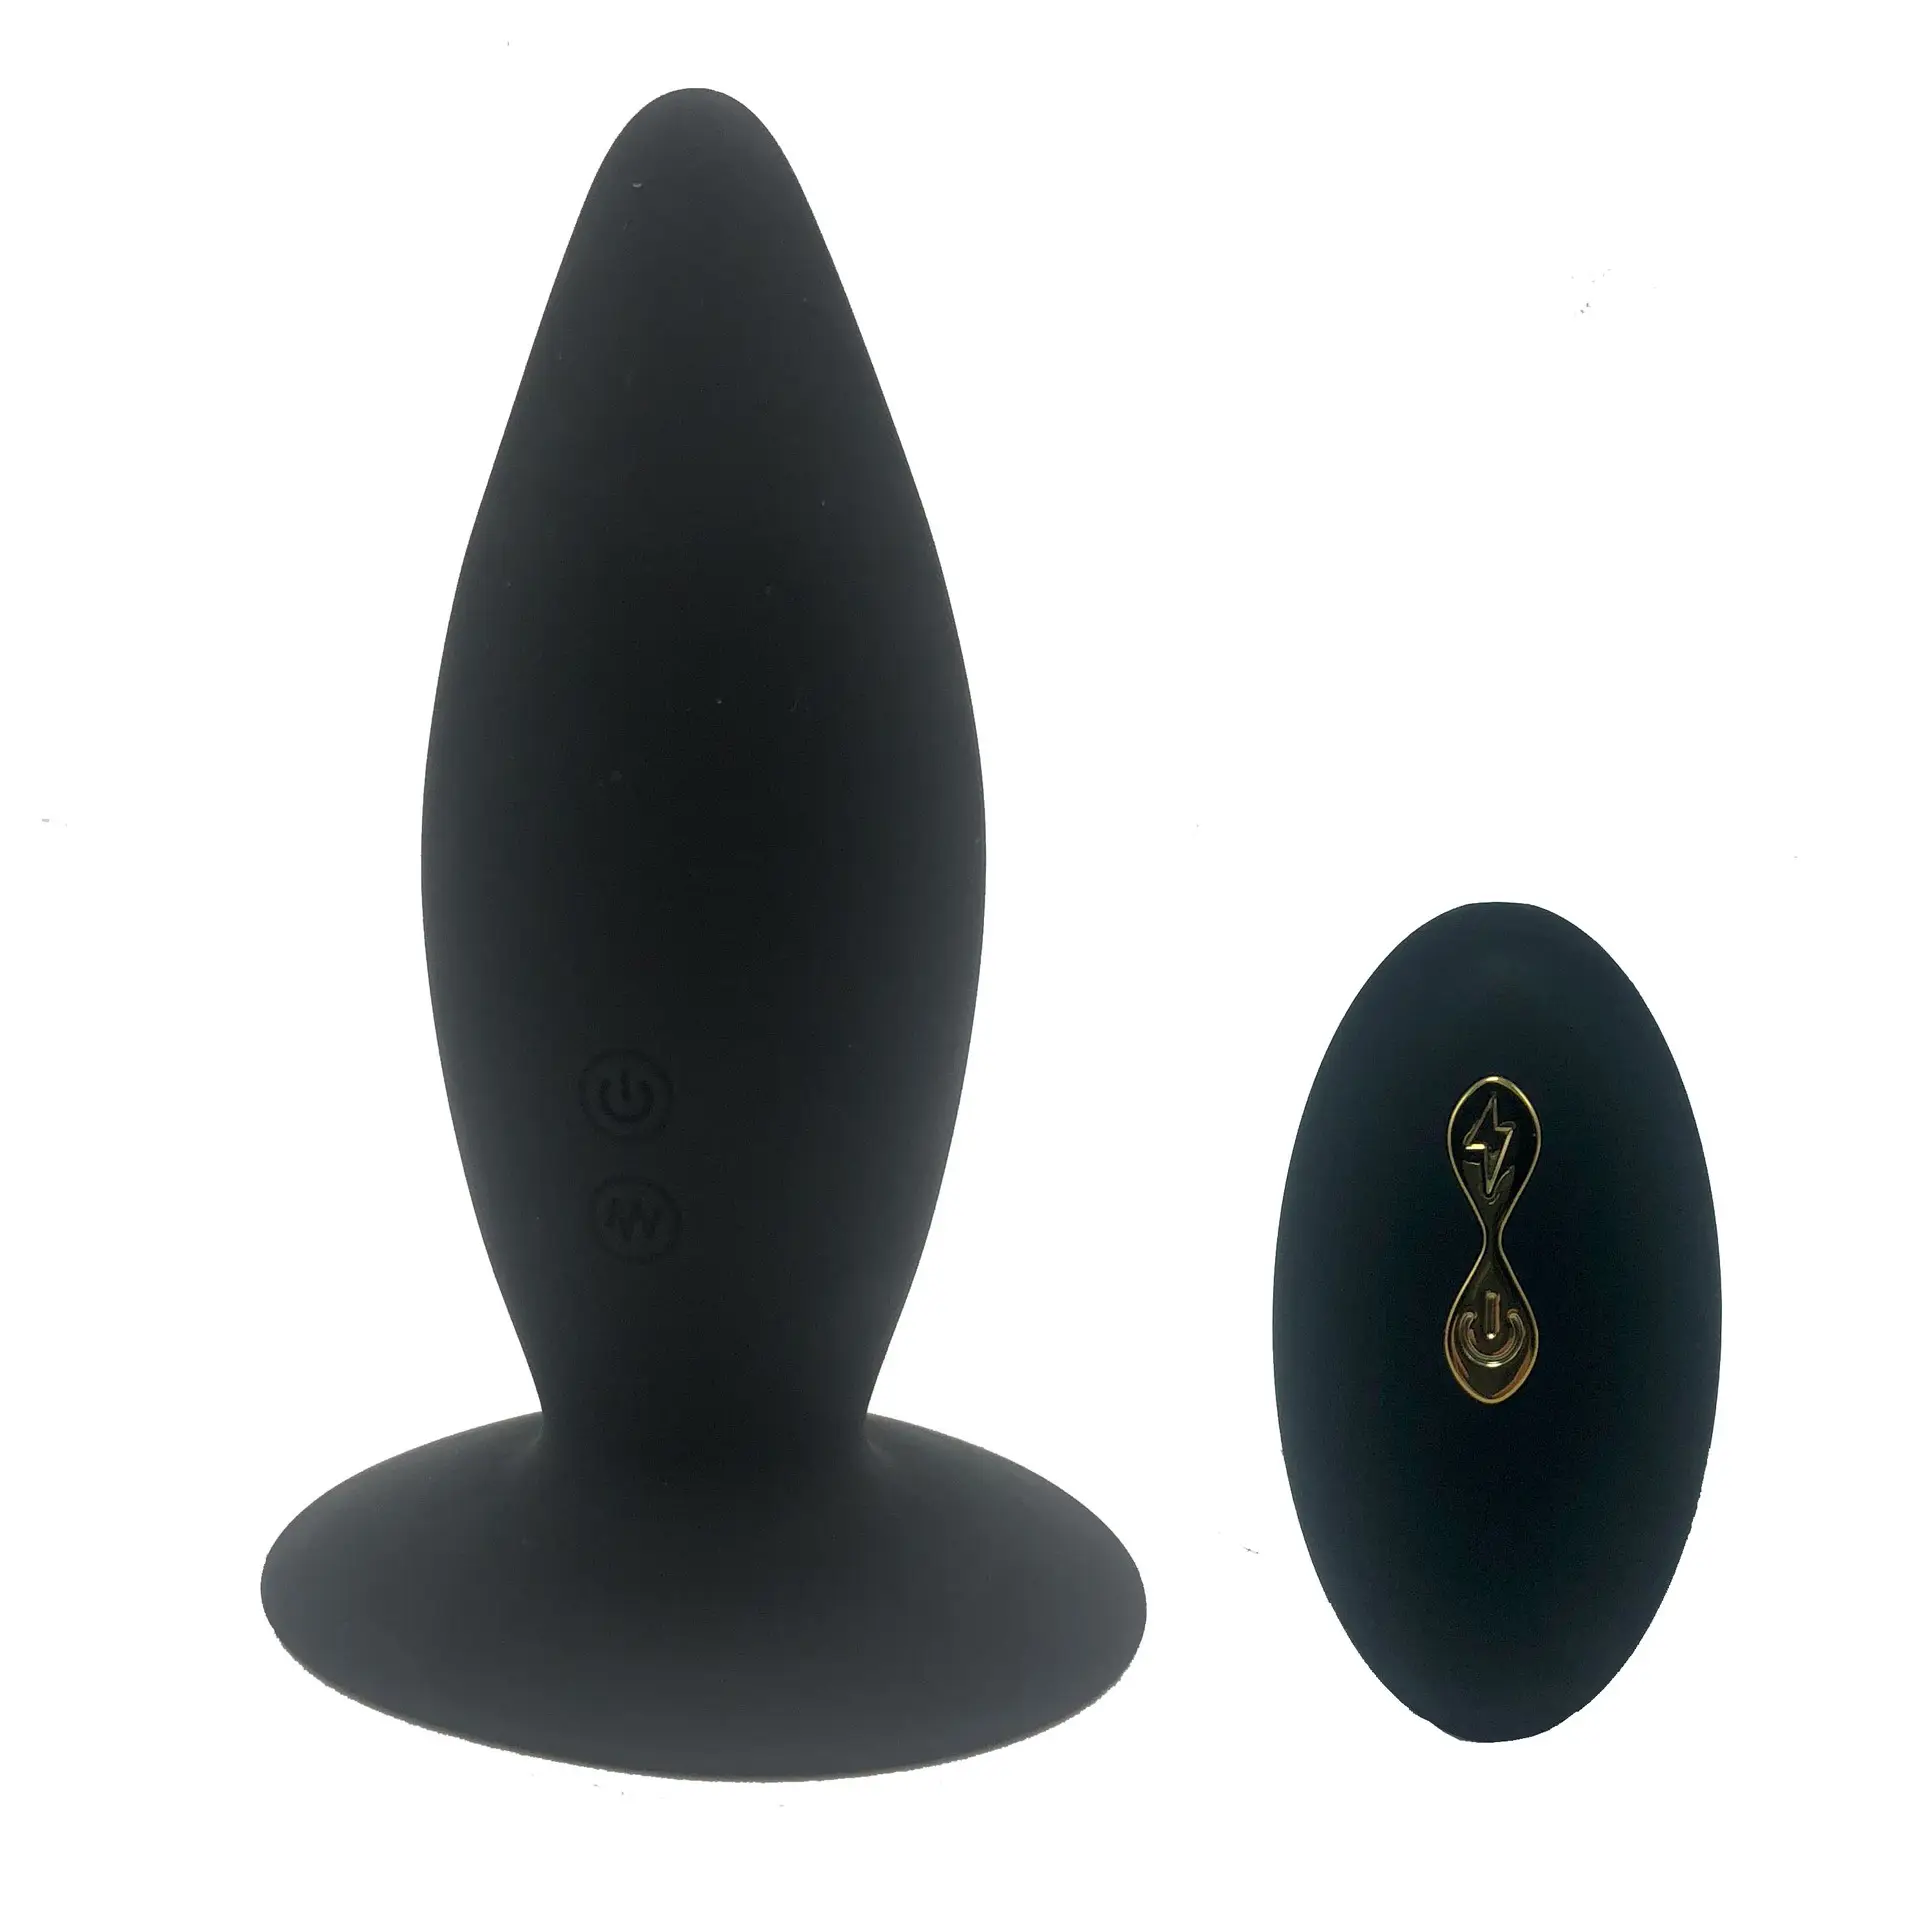 Delove Wireless Fernbedienung Silikon Anal Plug Vibrator Anal Sexspielzeug Sinnliche Butt Plugs Männlich Masturbieren für Männer